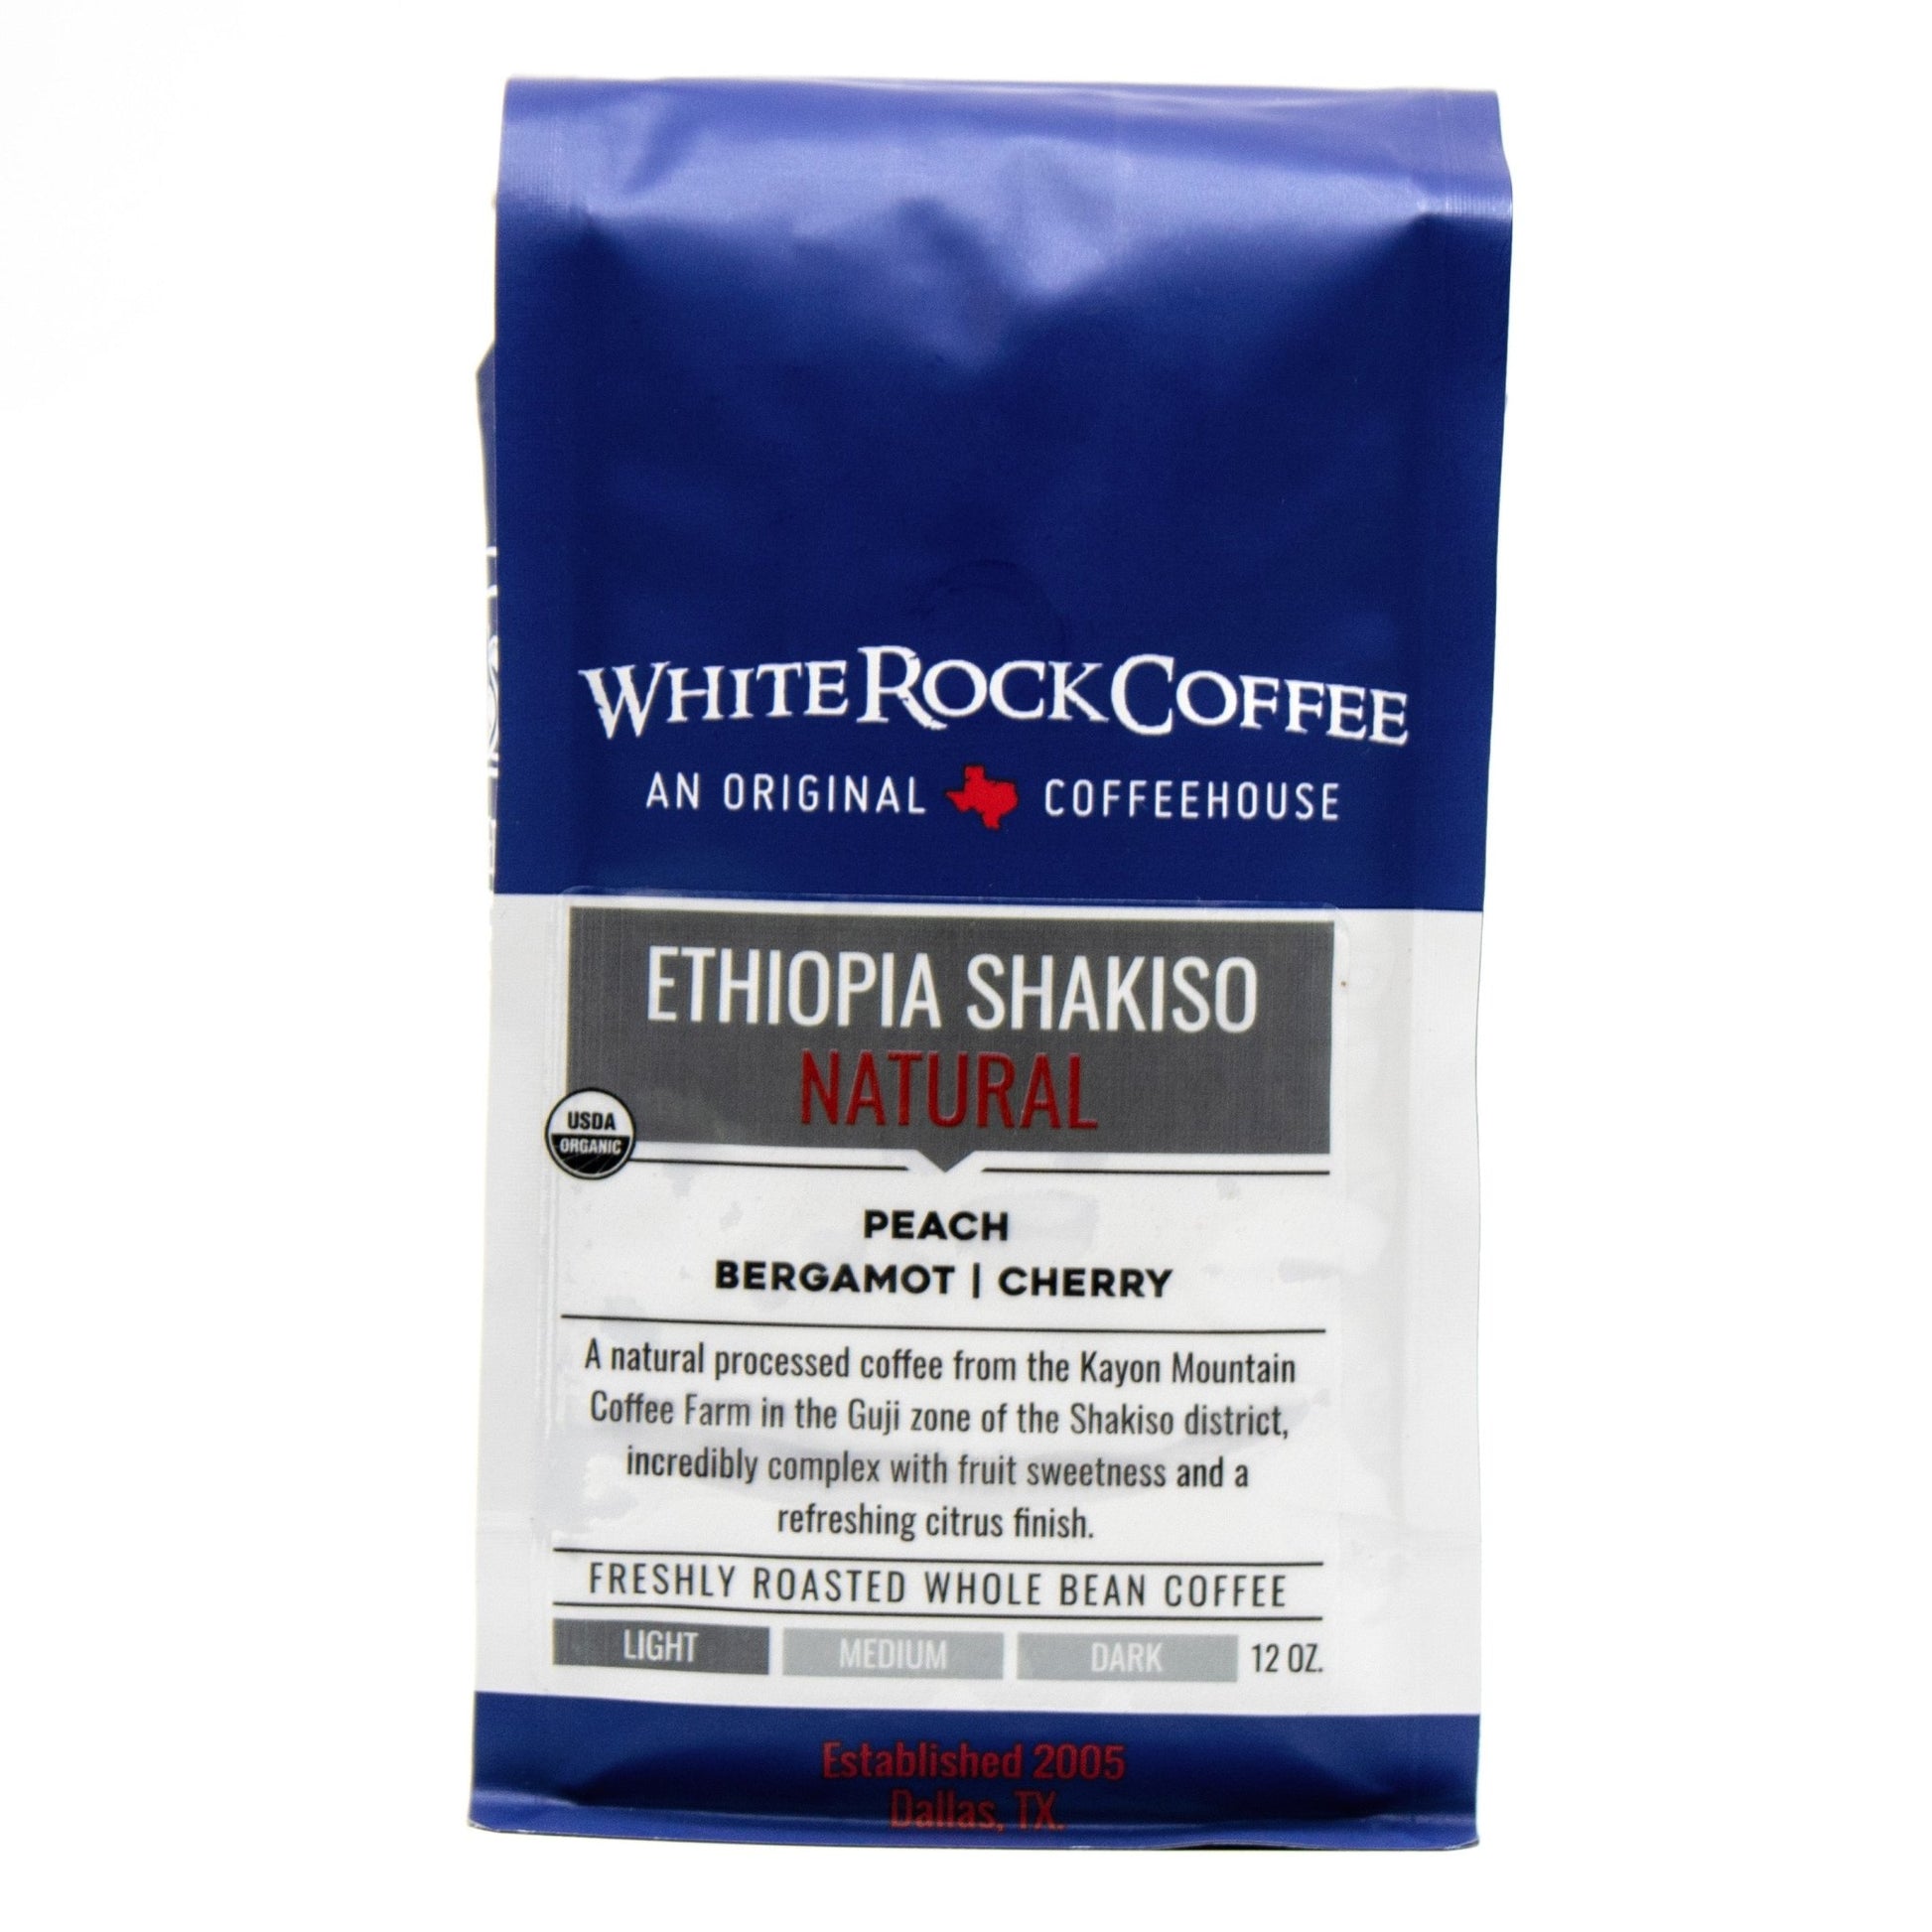 Ethiopia Shakiso Natural - White Rock Coffee